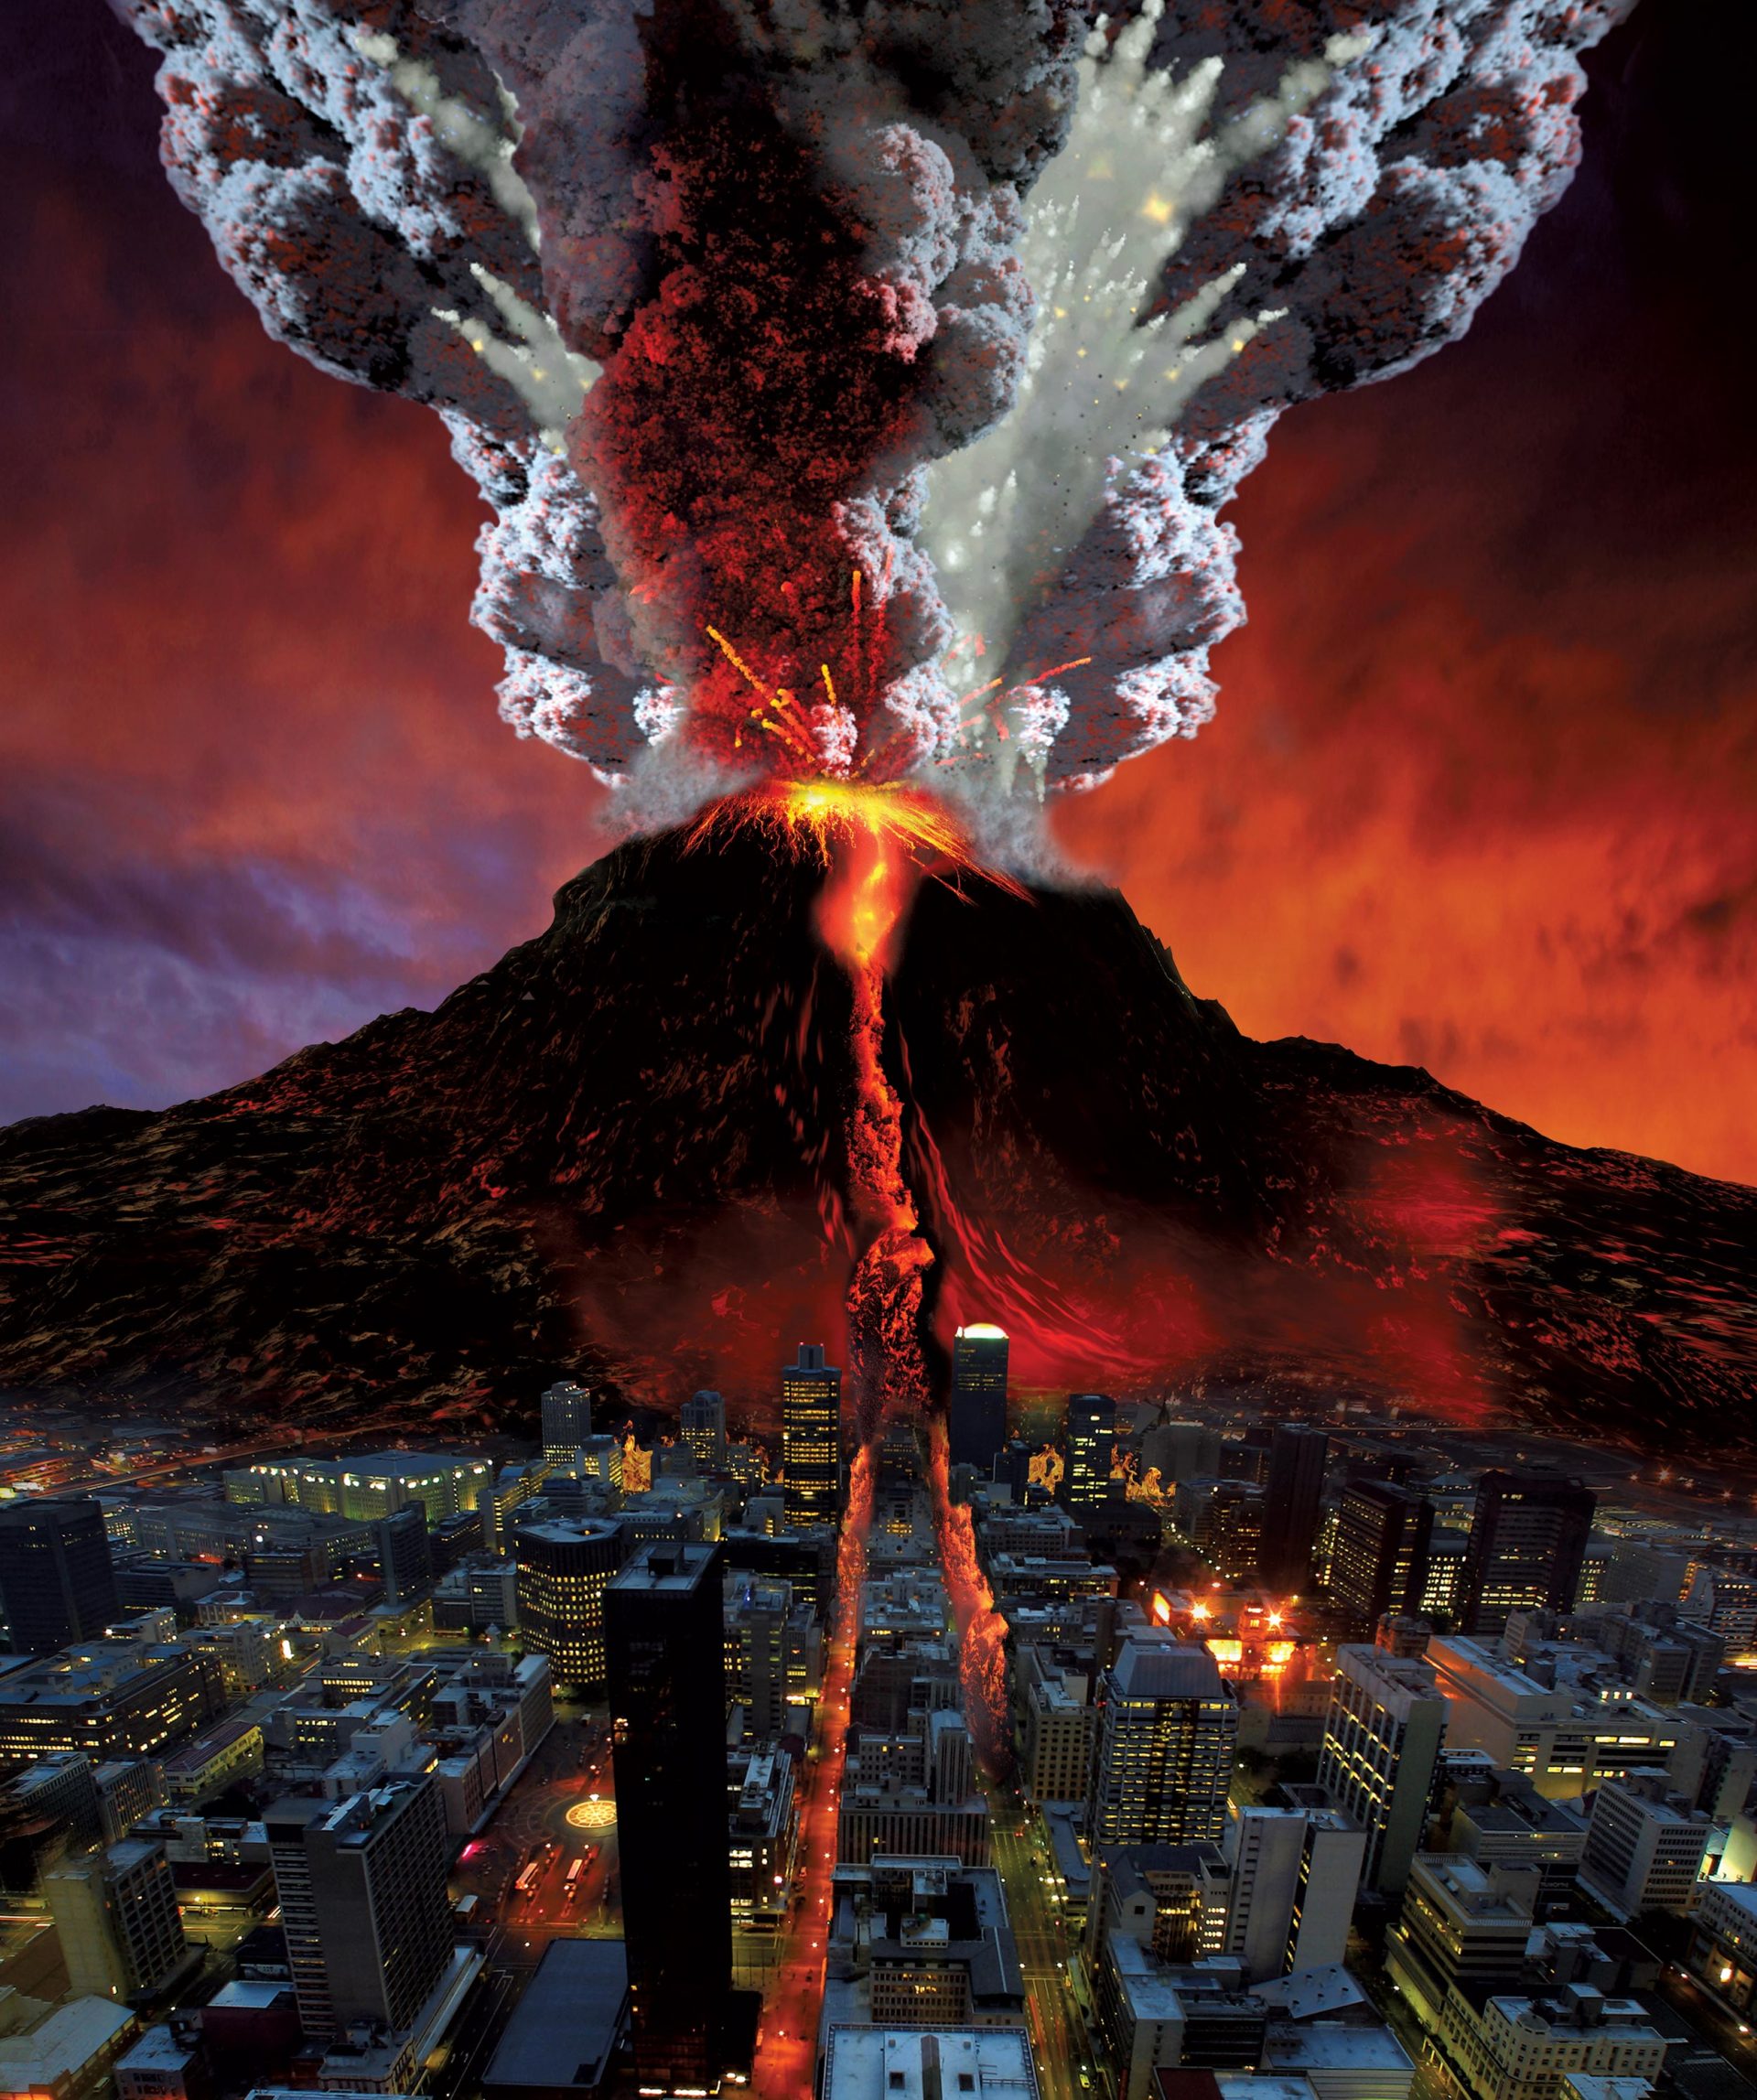 Supervulkaner – dødeligere enn en asteroidekollisjon